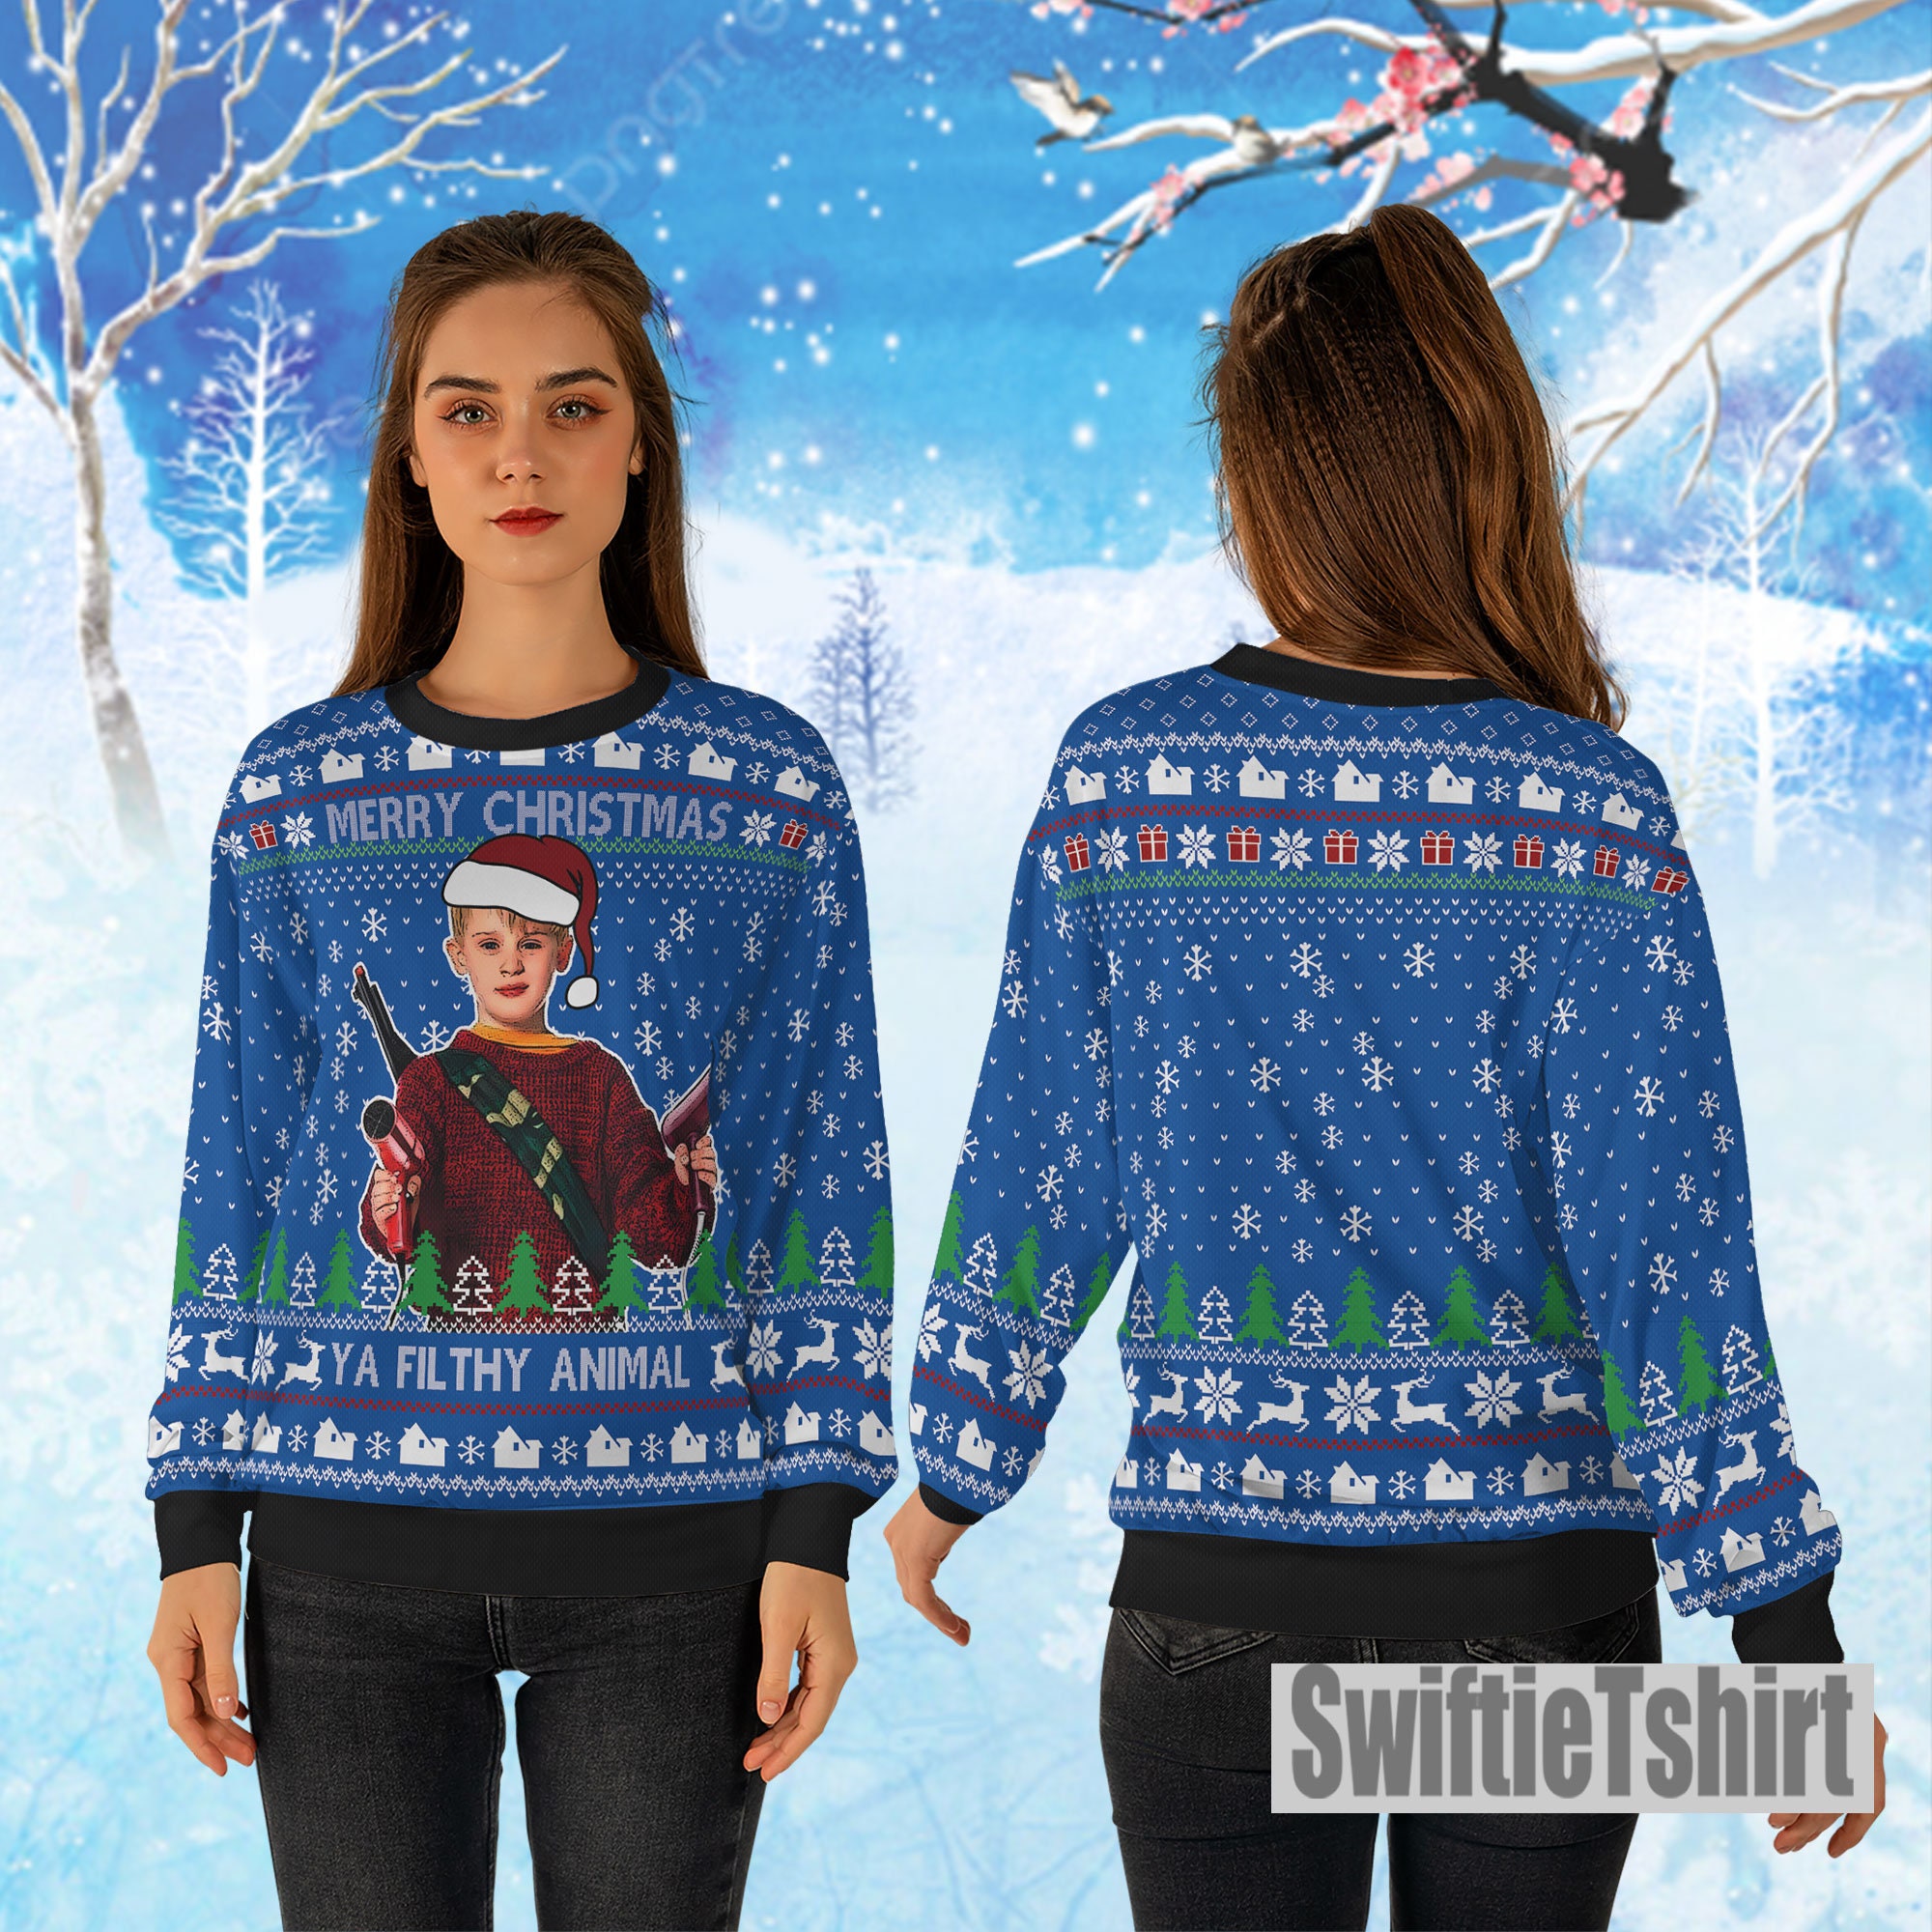 Discover Merry Christmas Ya Filthy Animal Home Alone Ugly Christmas Sweater, Home Alone Ugly Sweater Gift For Christmas, All Over Print Sweater